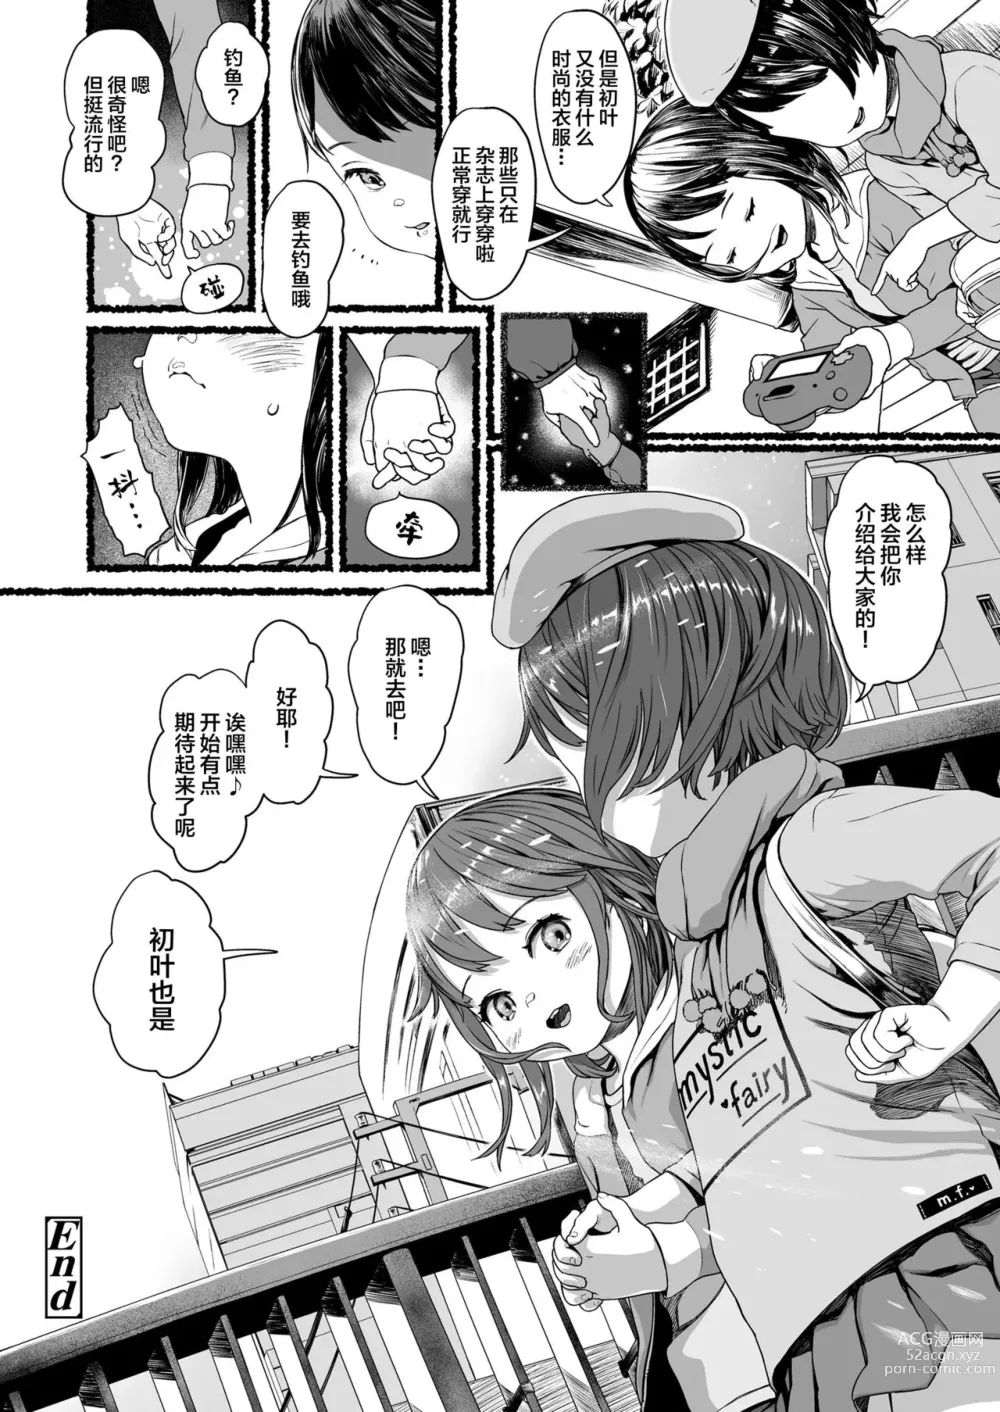 Page 13 of manga Futari no Kirameki